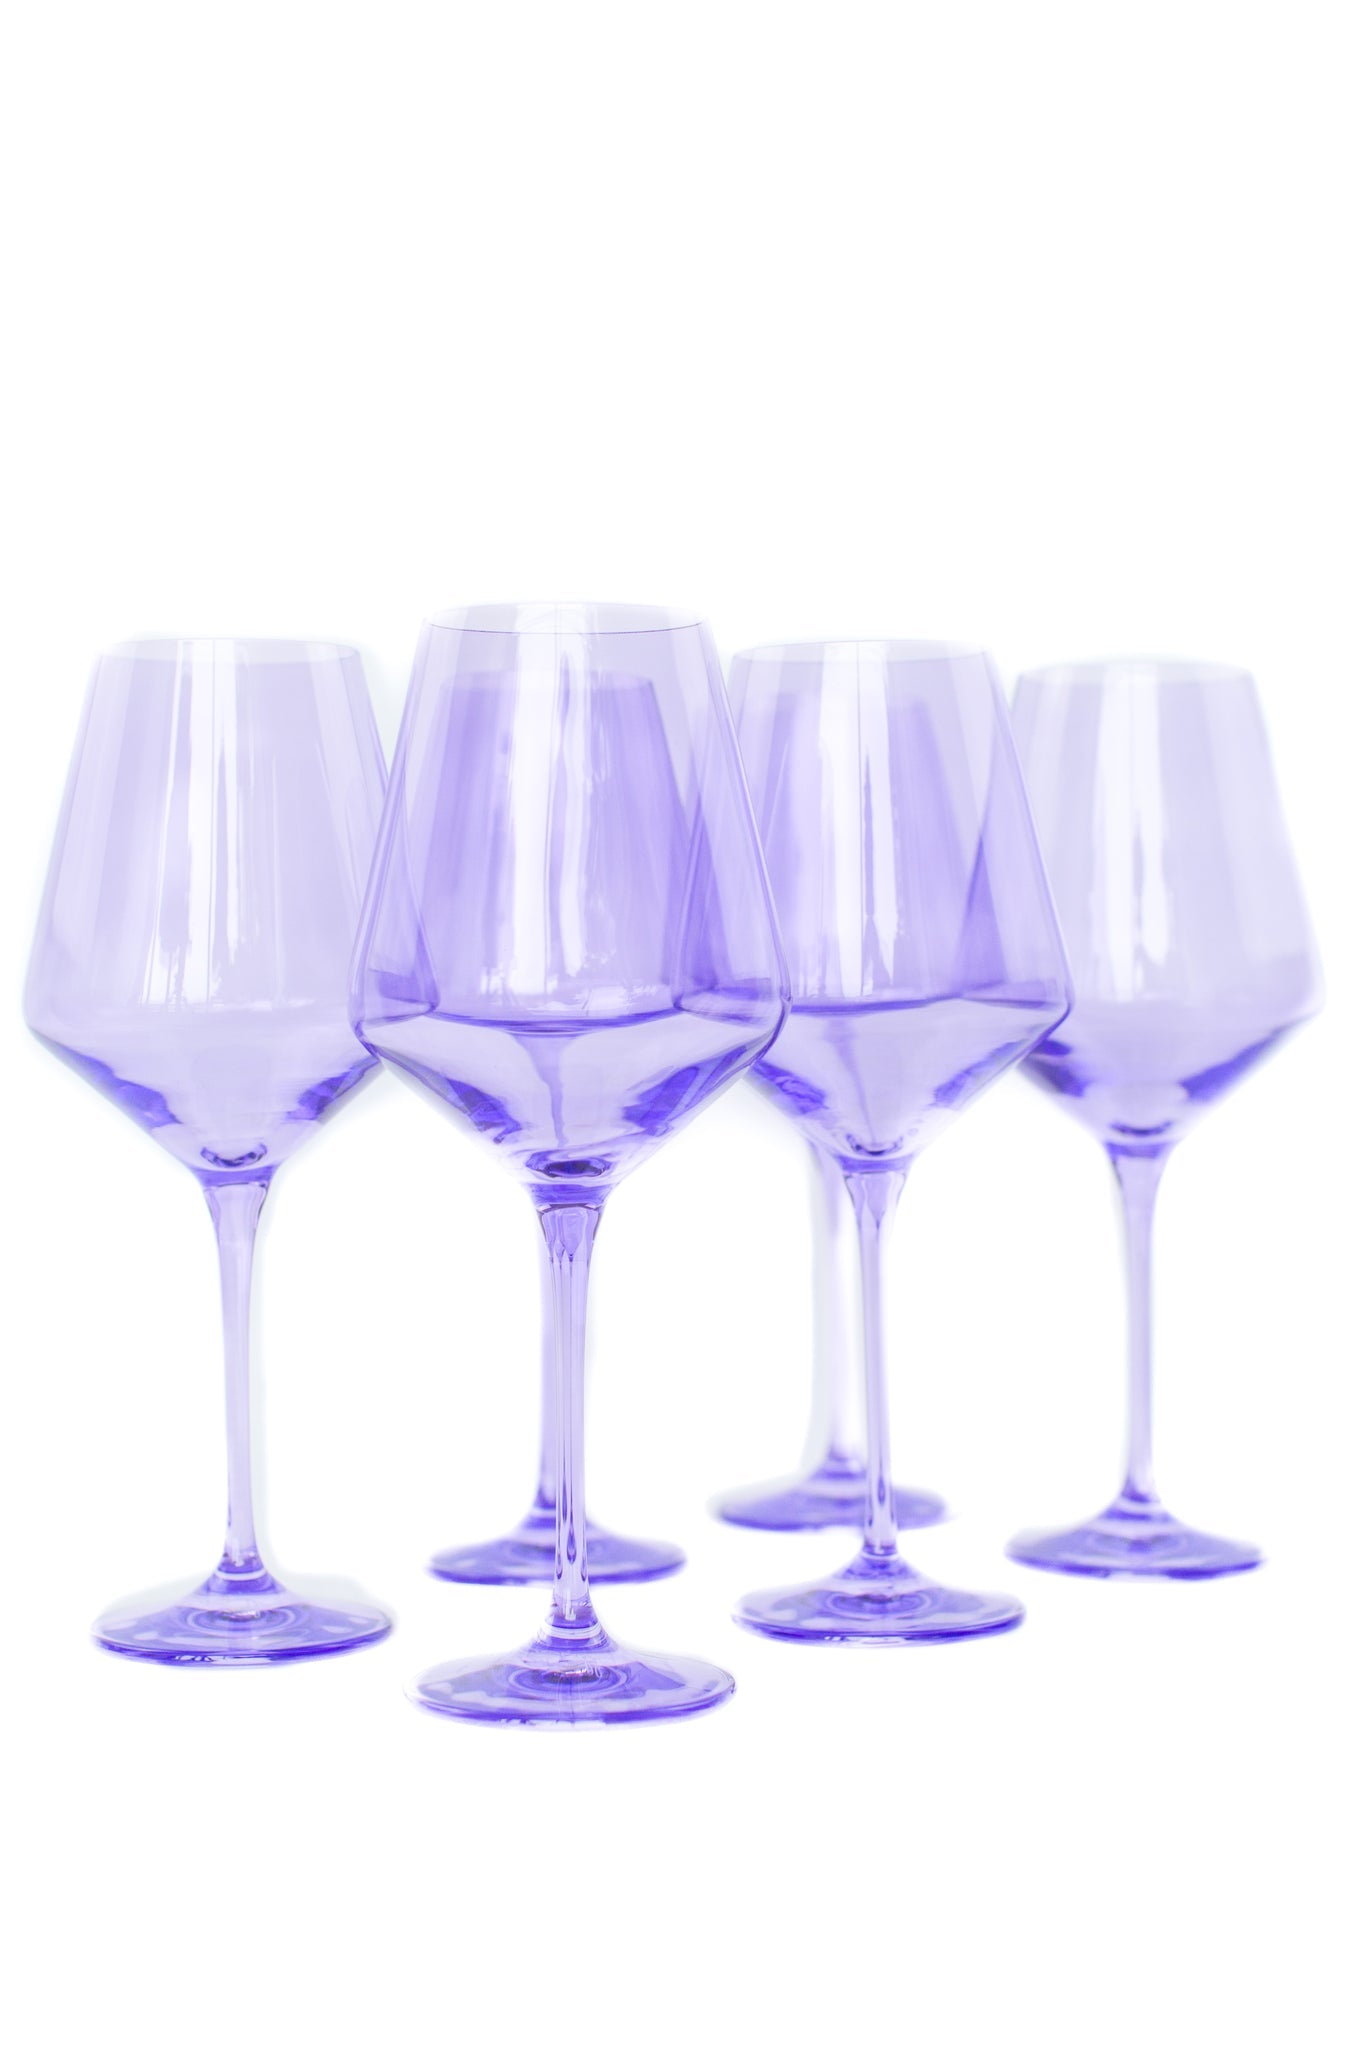 Load image into Gallery viewer, Estelle Stemmed Wine Glasses - Lavender
